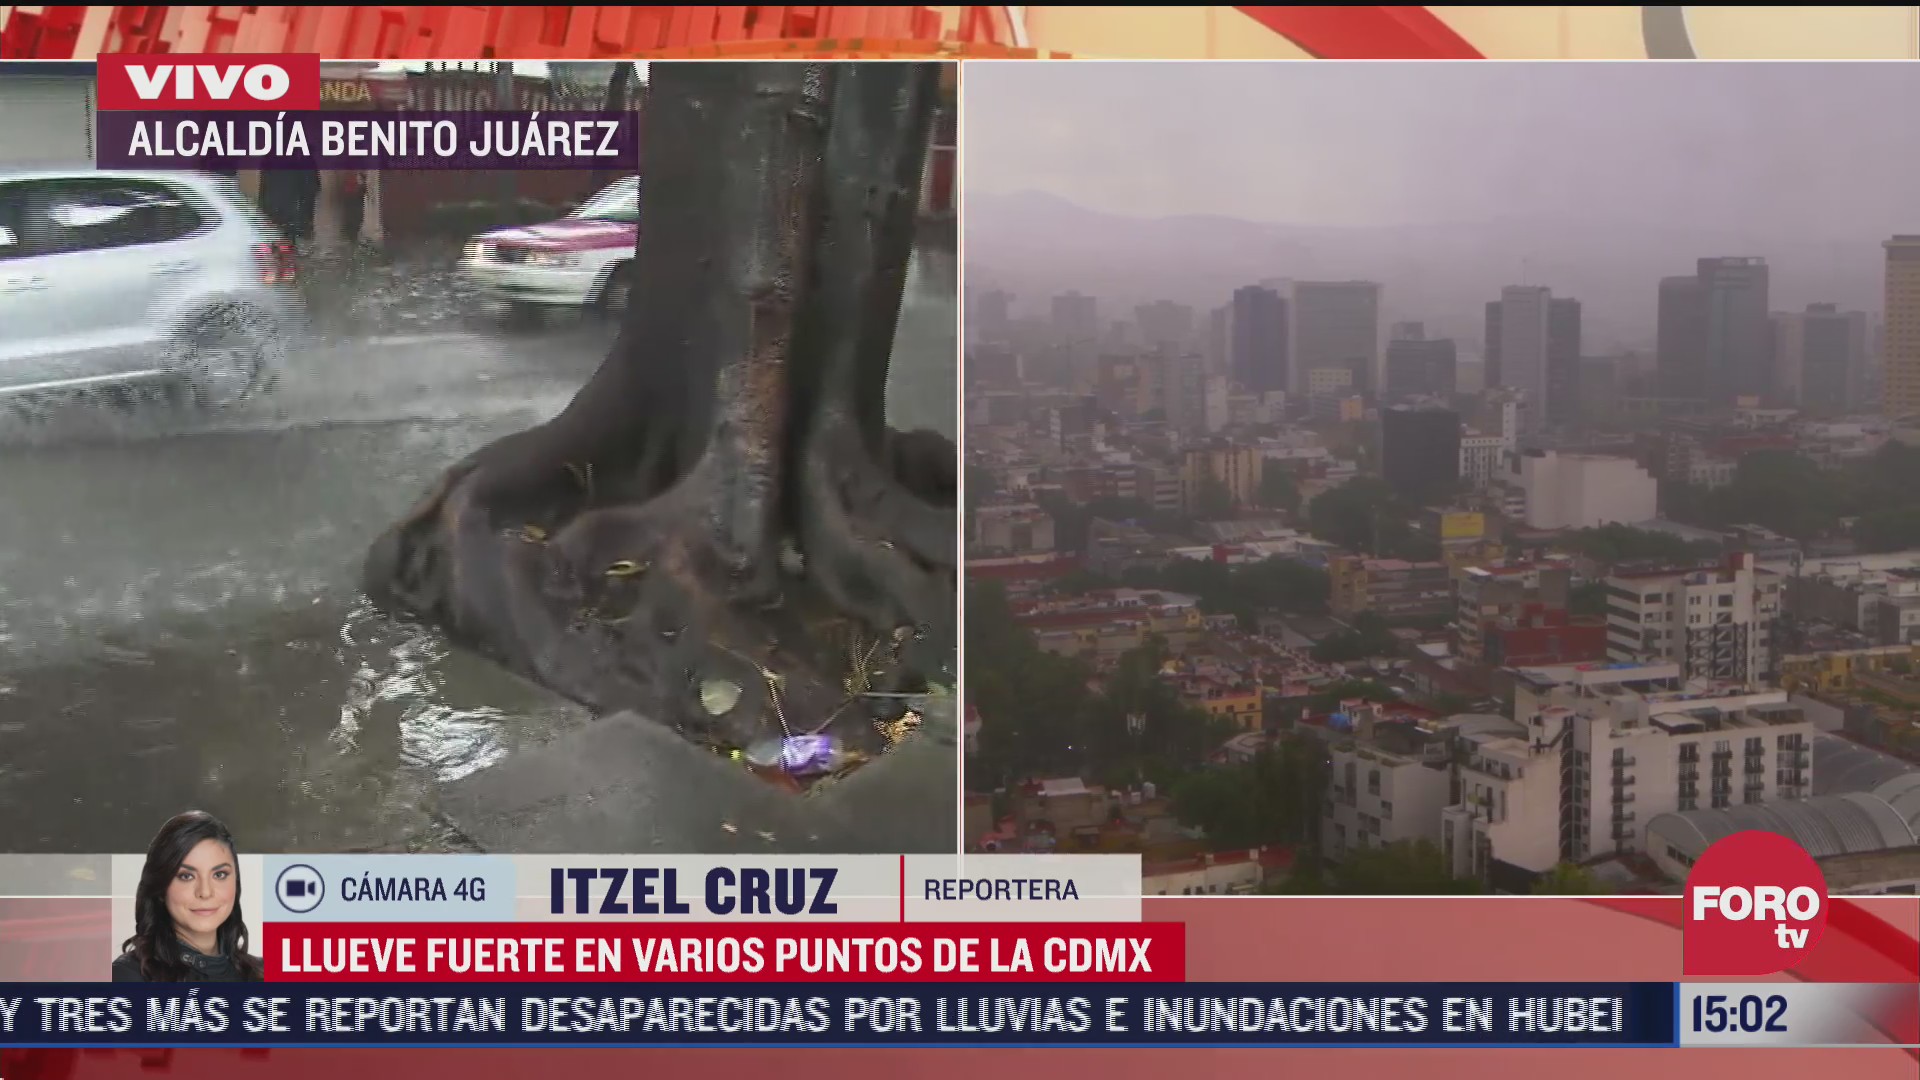 FOTO: 26 de julio 2020, lluvia intensa en calles de la ciudad de mexico